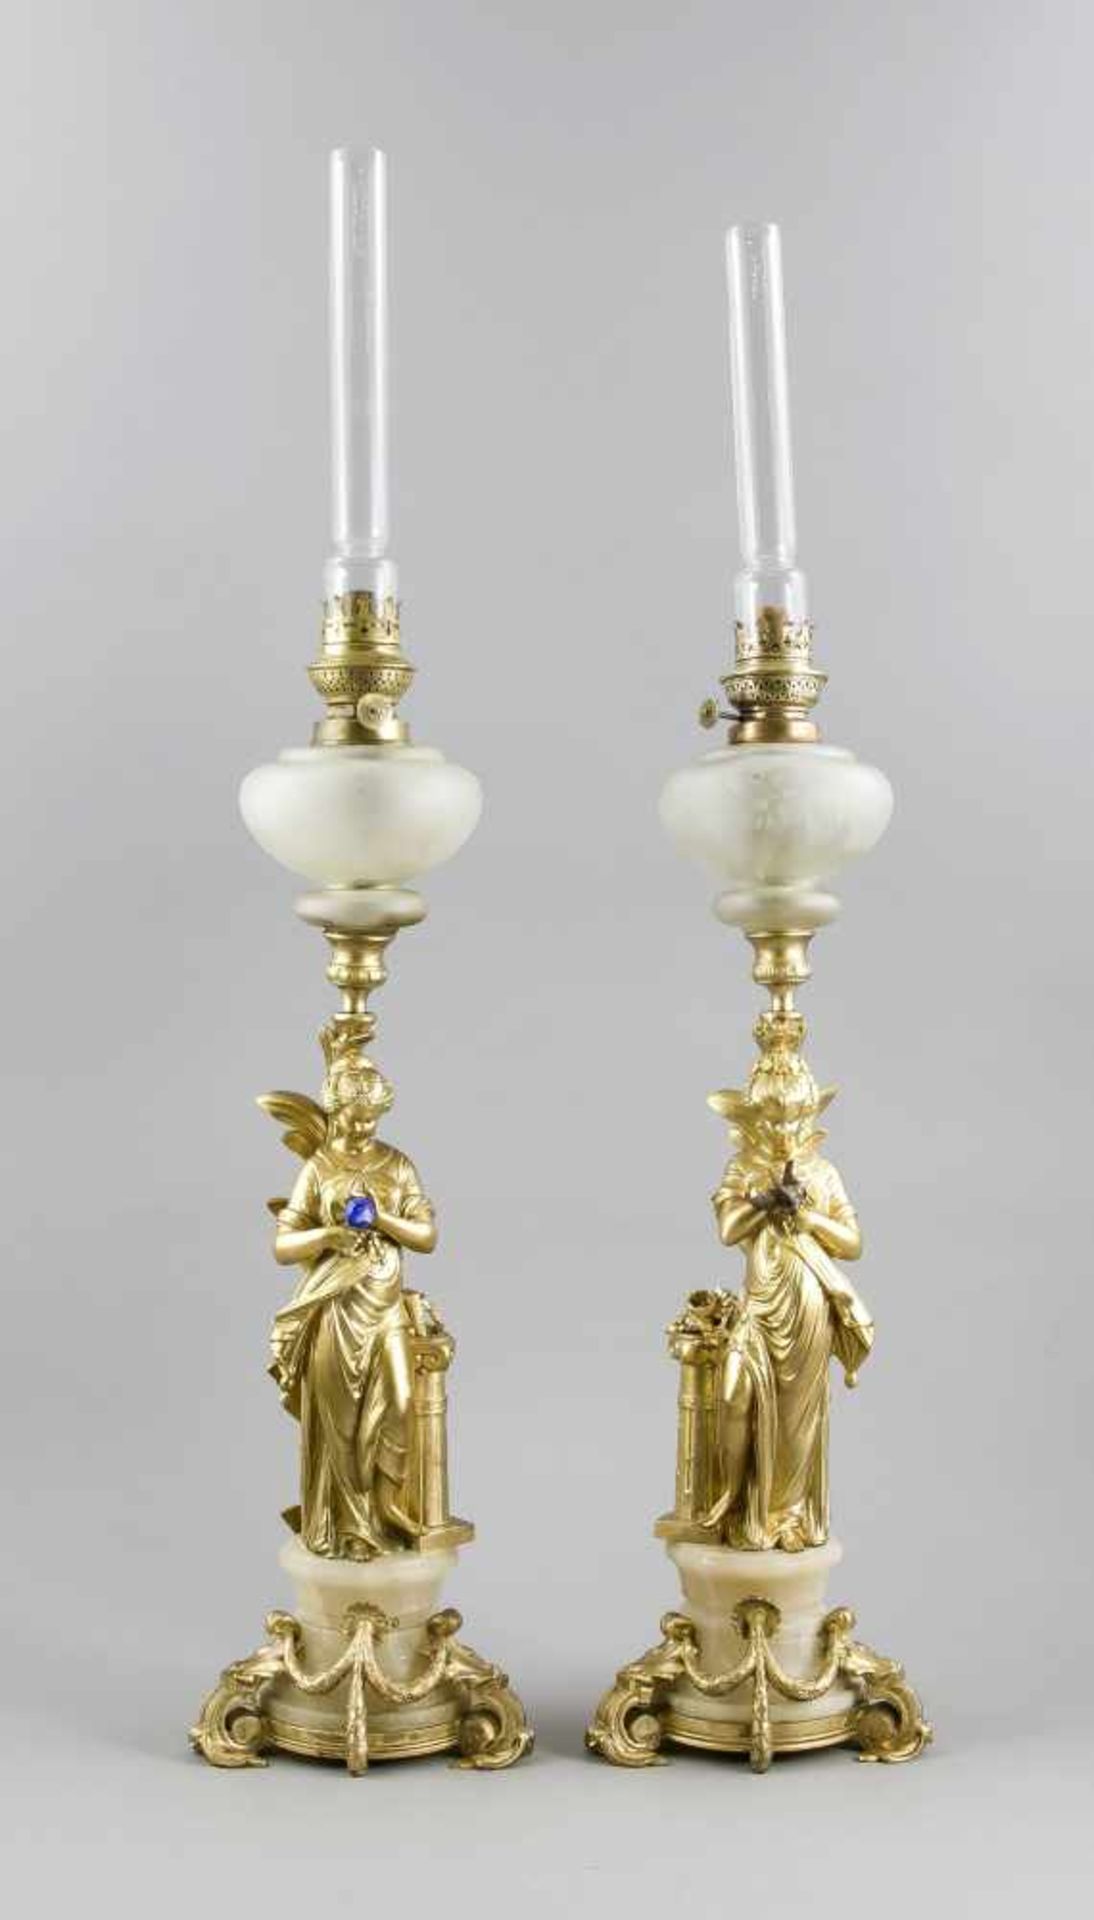 Zwei figürliche Petroleumlampen um 1900, Alabaster und goldbronzierter Metallguss,Glastank mit